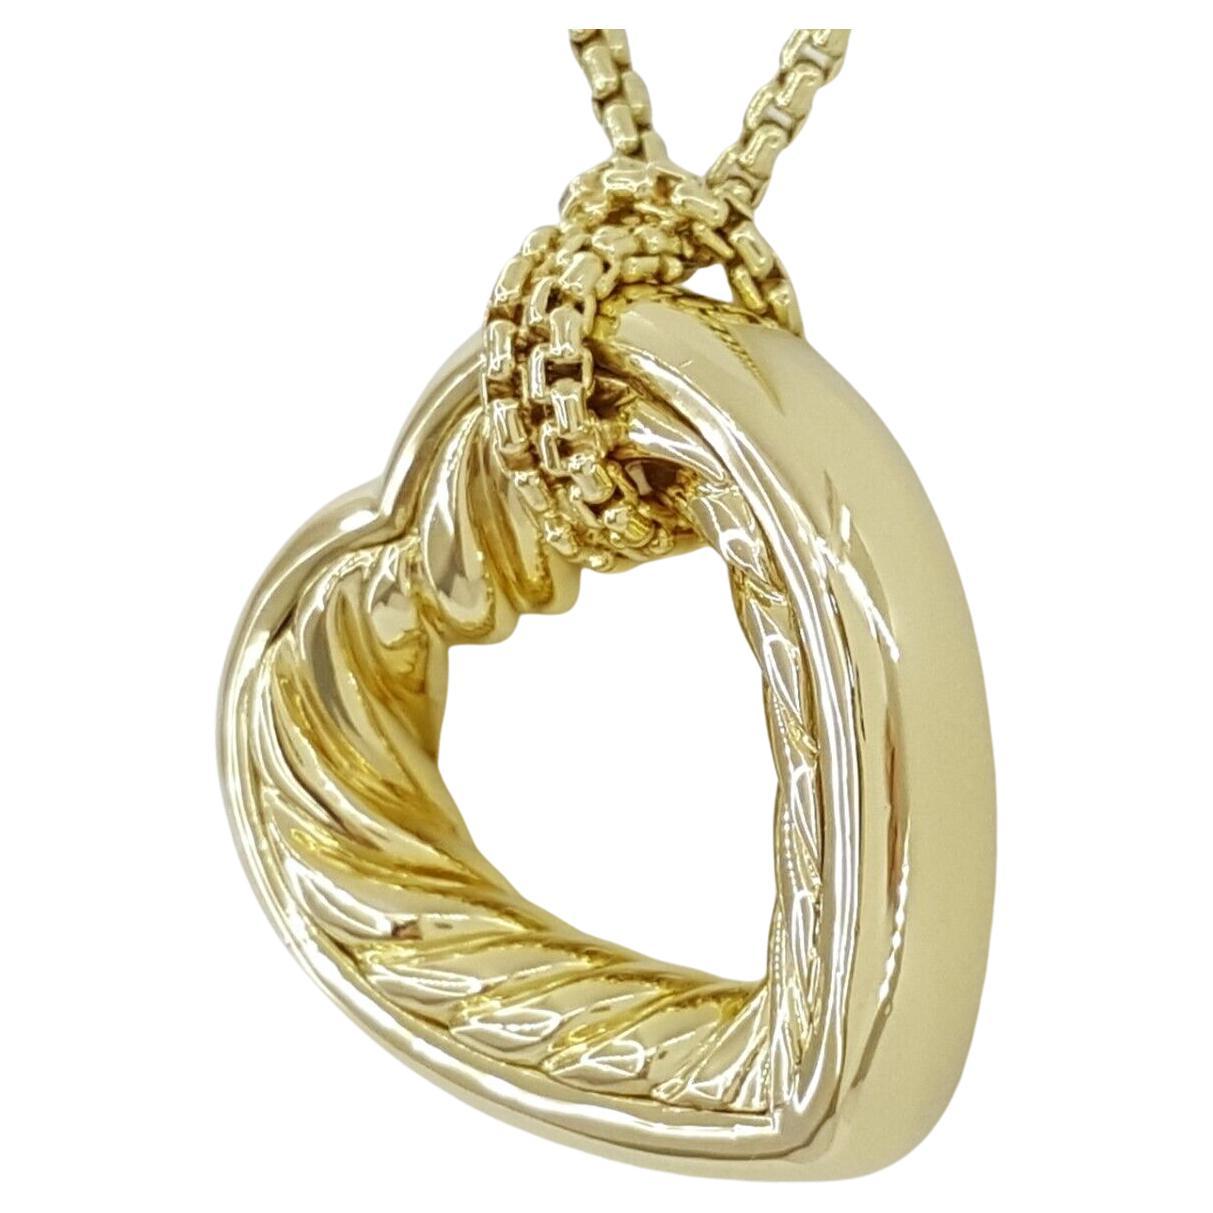 
Ce collier comporte un pendentif câble en or jaune 18 carats David Yurman mesurant 25 mm de large, accompagné d'une chaîne à maillons ronds de 1,5 mm d'une longueur de 20 pouces.

Les dimensions du pendentif sont les suivantes : 26 mm de longueur